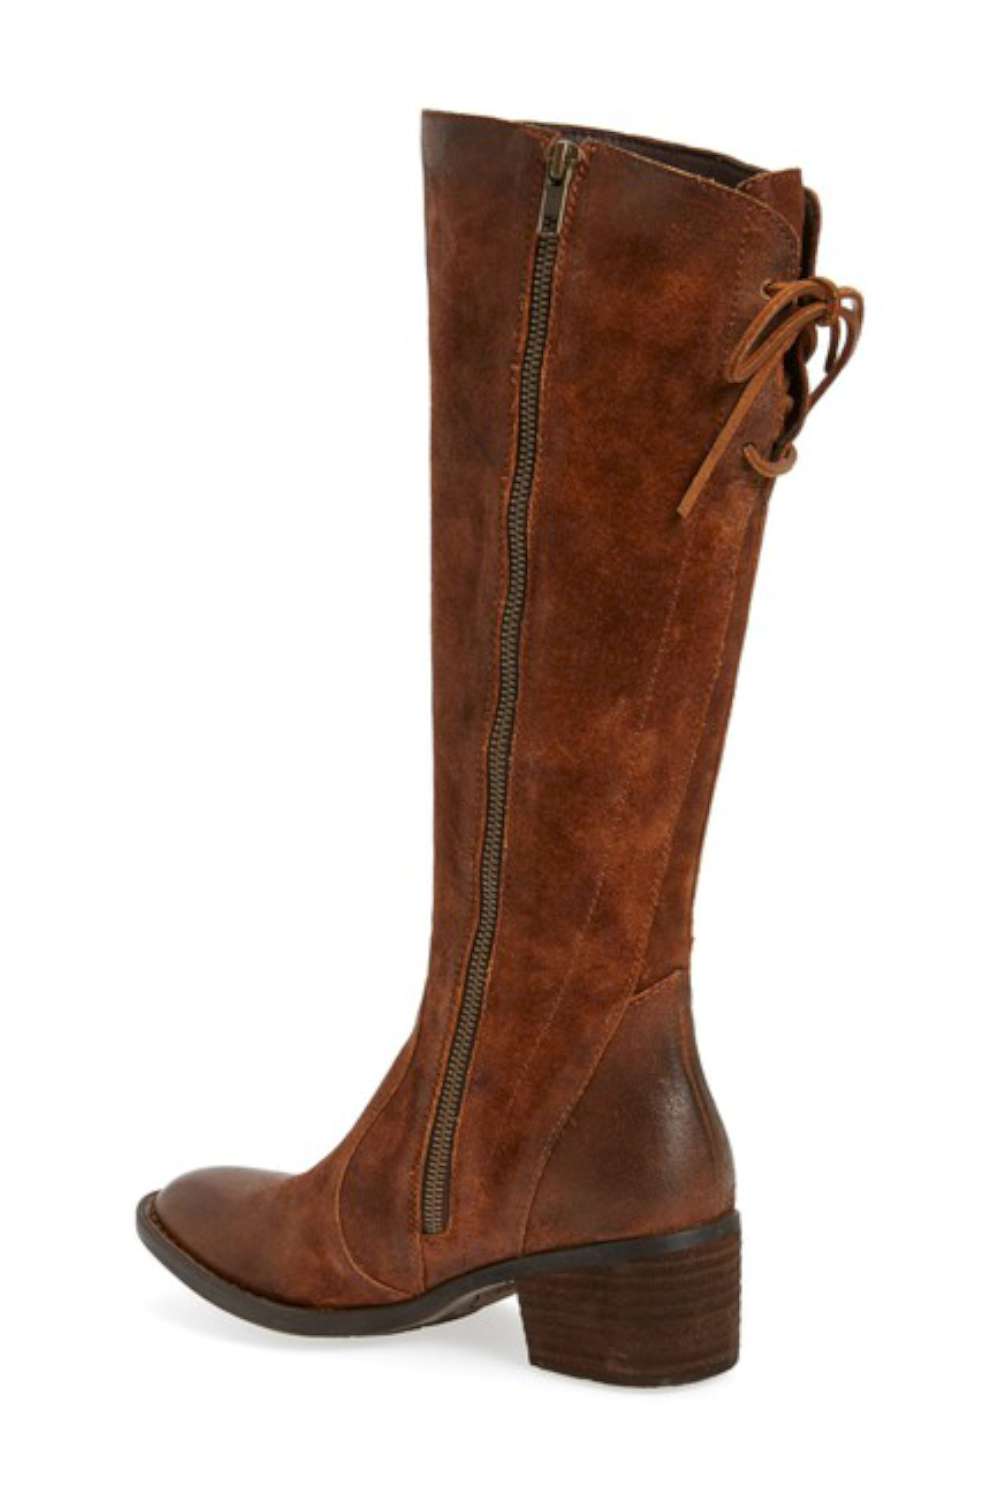 B.O.C Womens Felicia Closed Toe Over Knee Fashion Boots, Rust, Size 10. ...